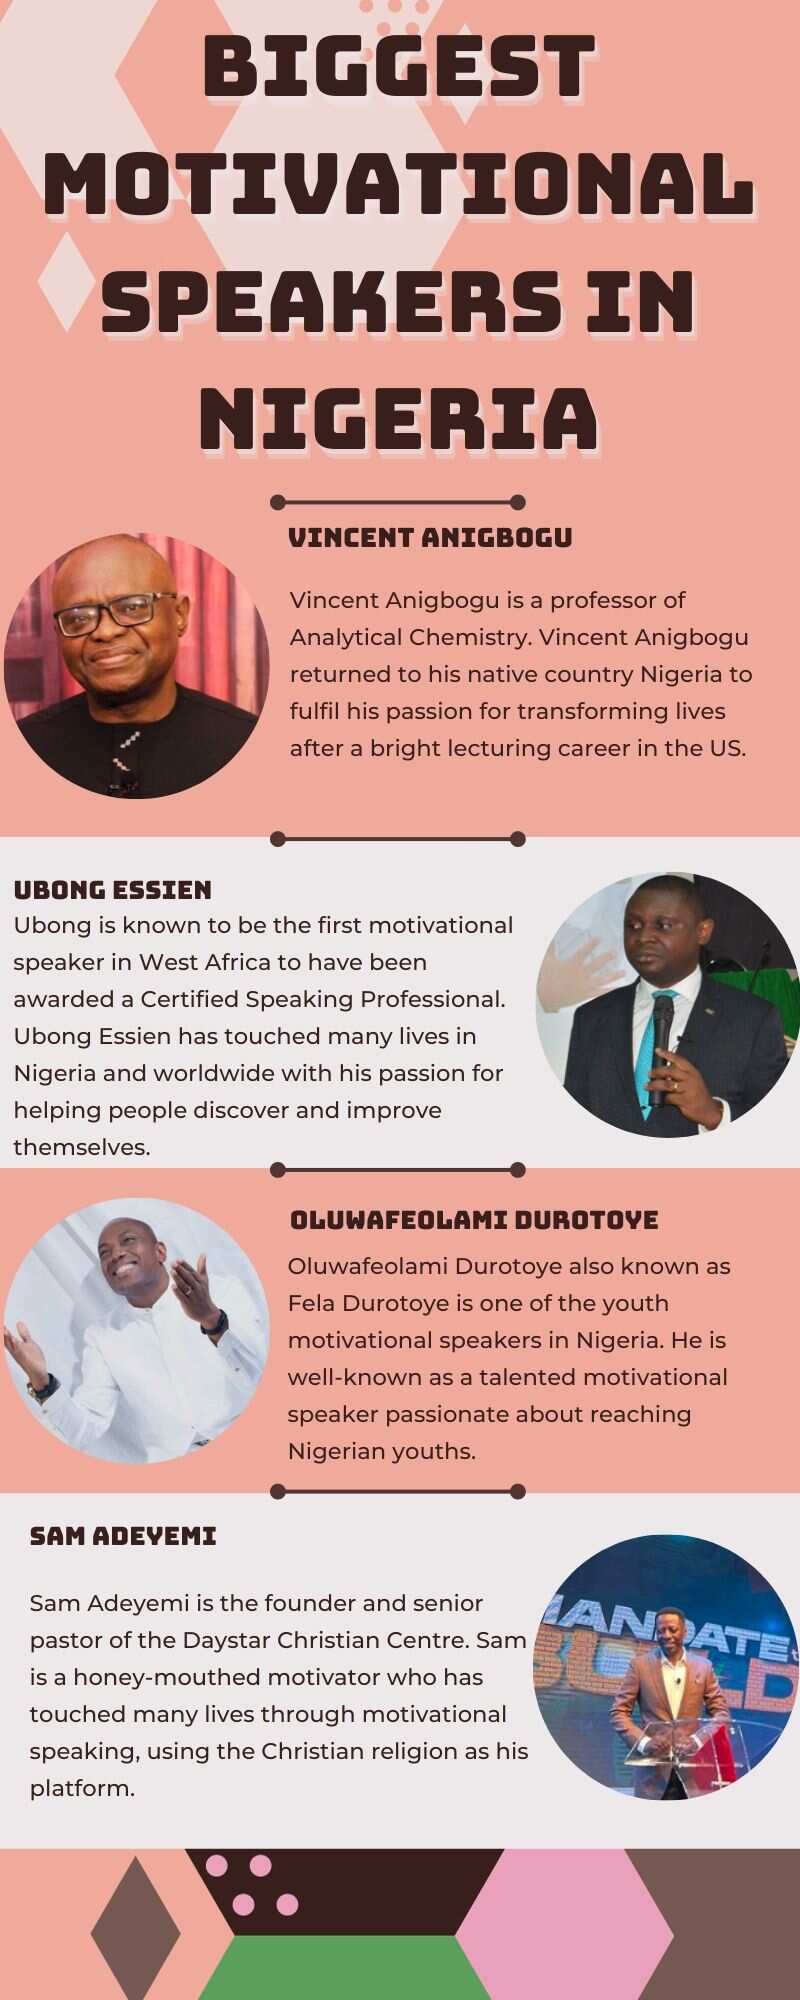 Biggest motivational speakers in Nigeria